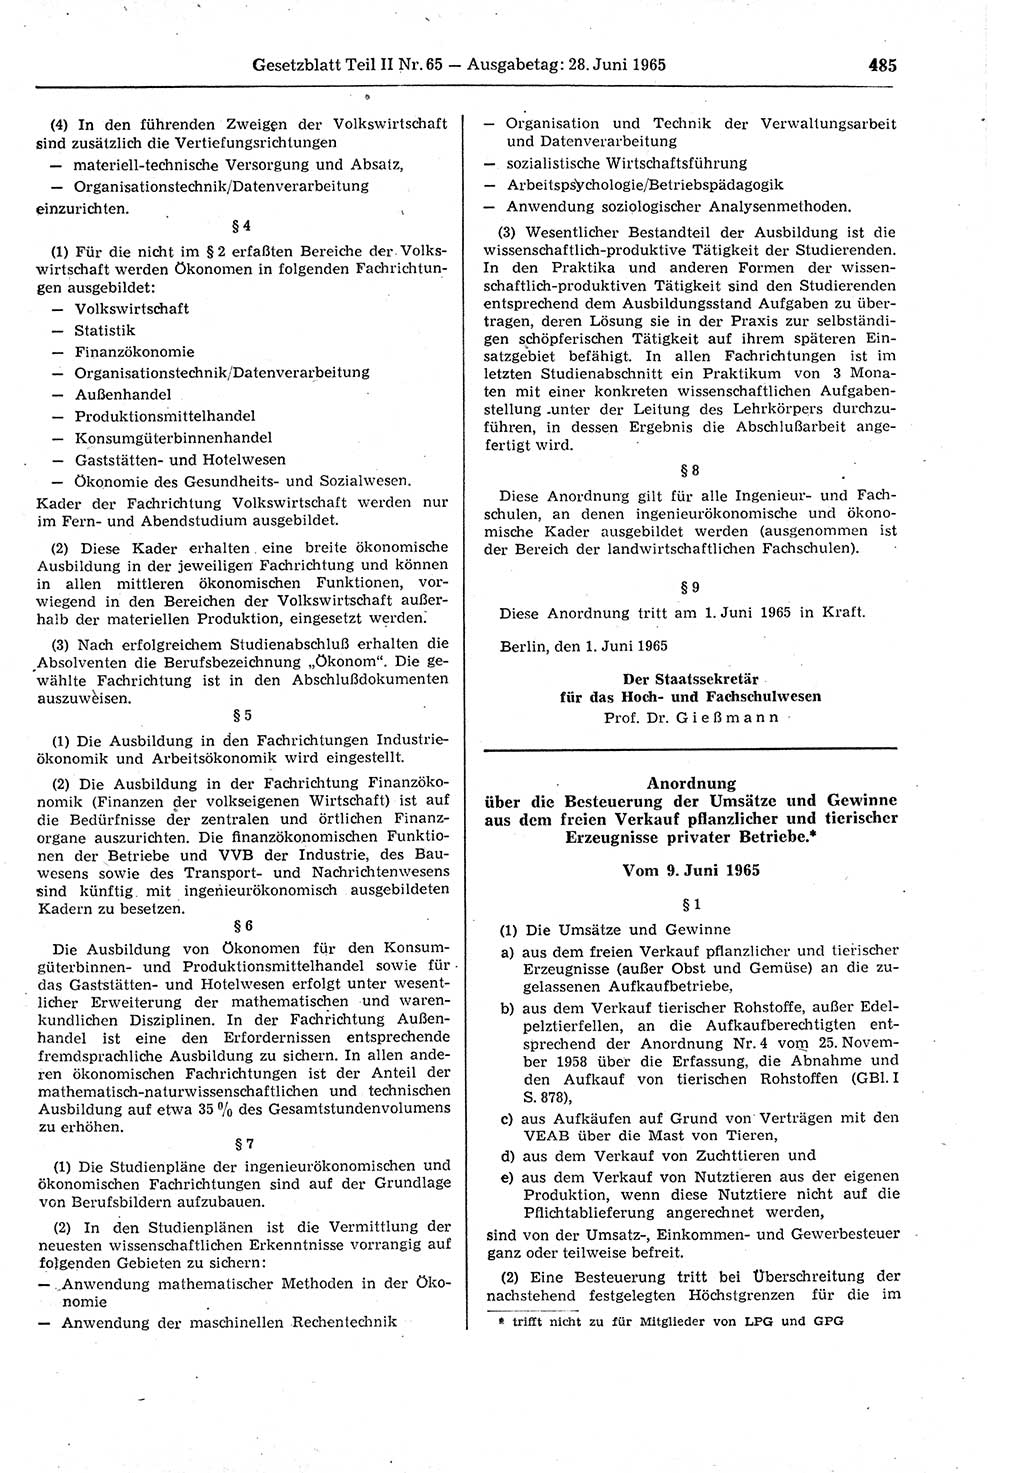 Gesetzblatt (GBl.) der Deutschen Demokratischen Republik (DDR) Teil ⅠⅠ 1965, Seite 485 (GBl. DDR ⅠⅠ 1965, S. 485)